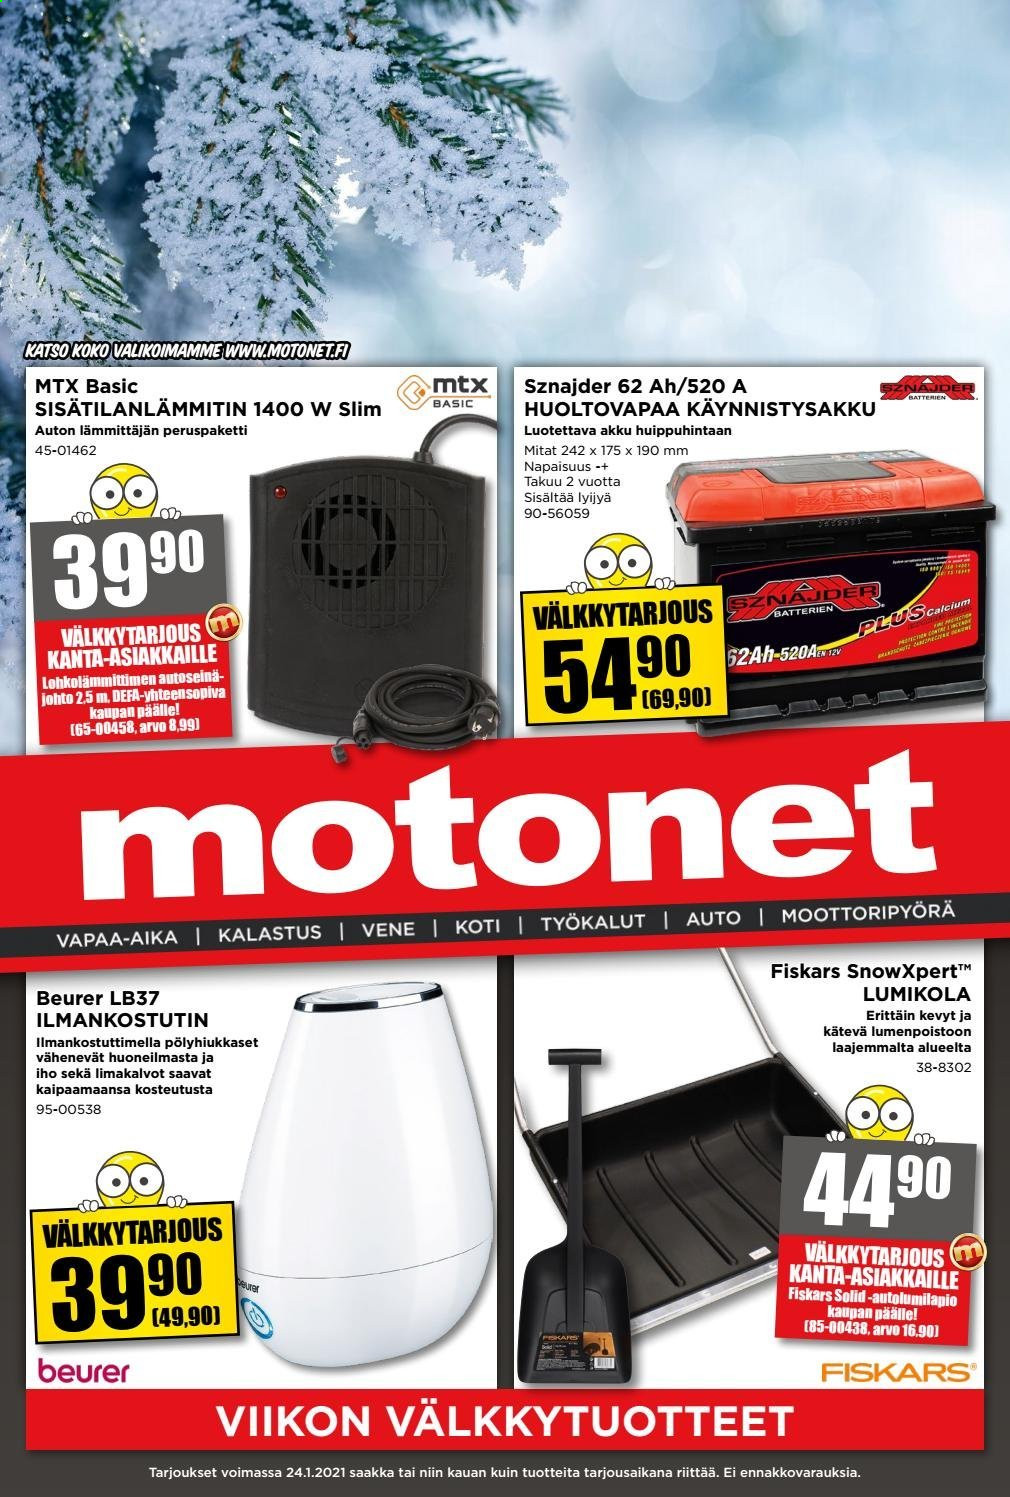 thumbnail - Motonet tarjoukset  - 13.01.2021 - 24.01.2021 - Tarjoustuotteet - Fiskars, sisätilanlämmitin. Sivu 1.